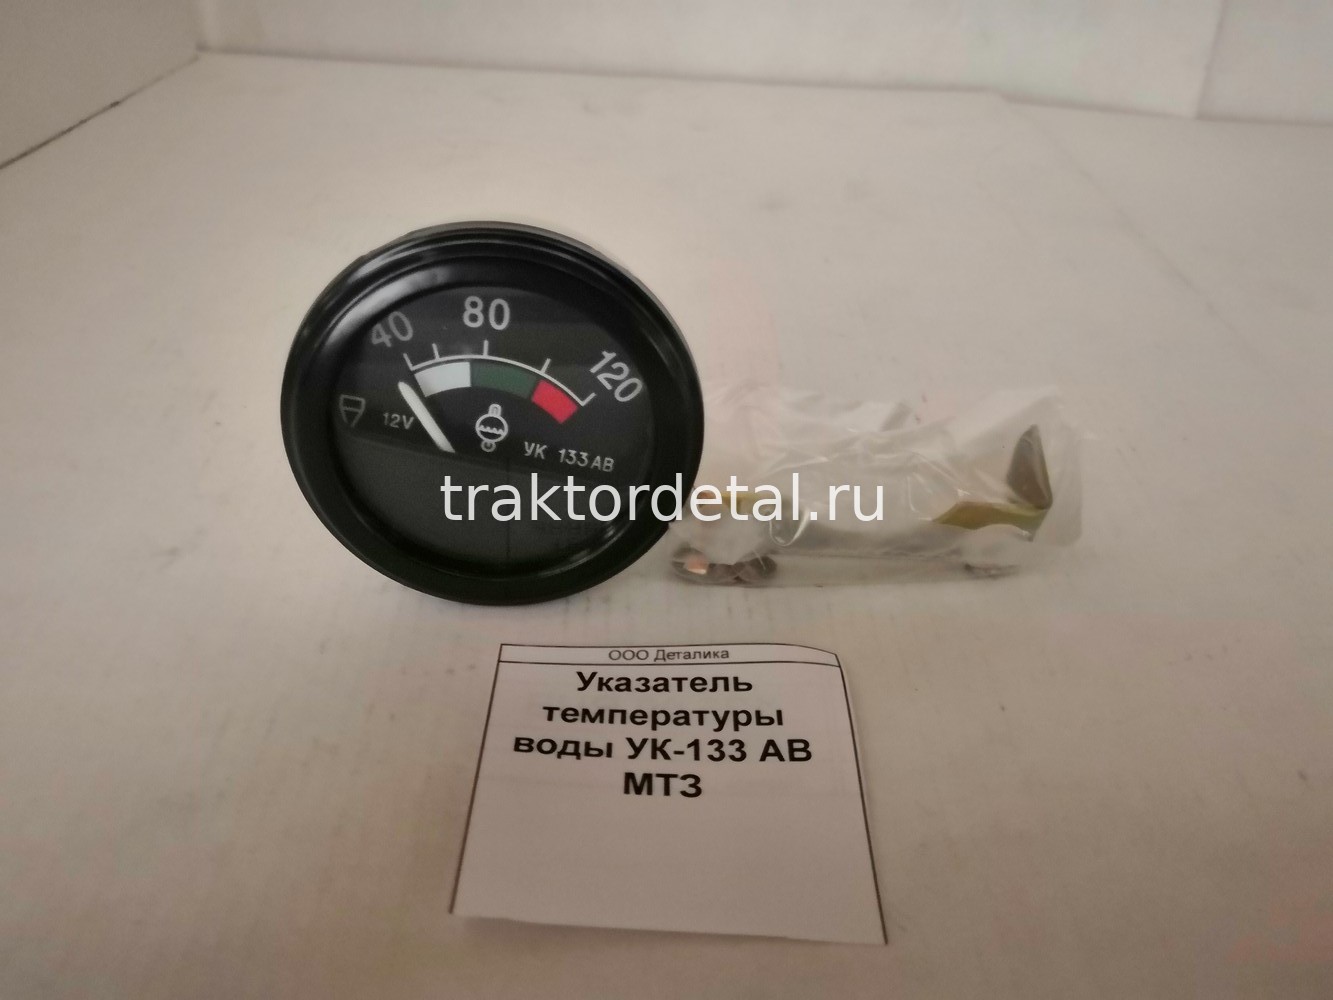 Указатель температуры воды УК-133 АВ МТЗ